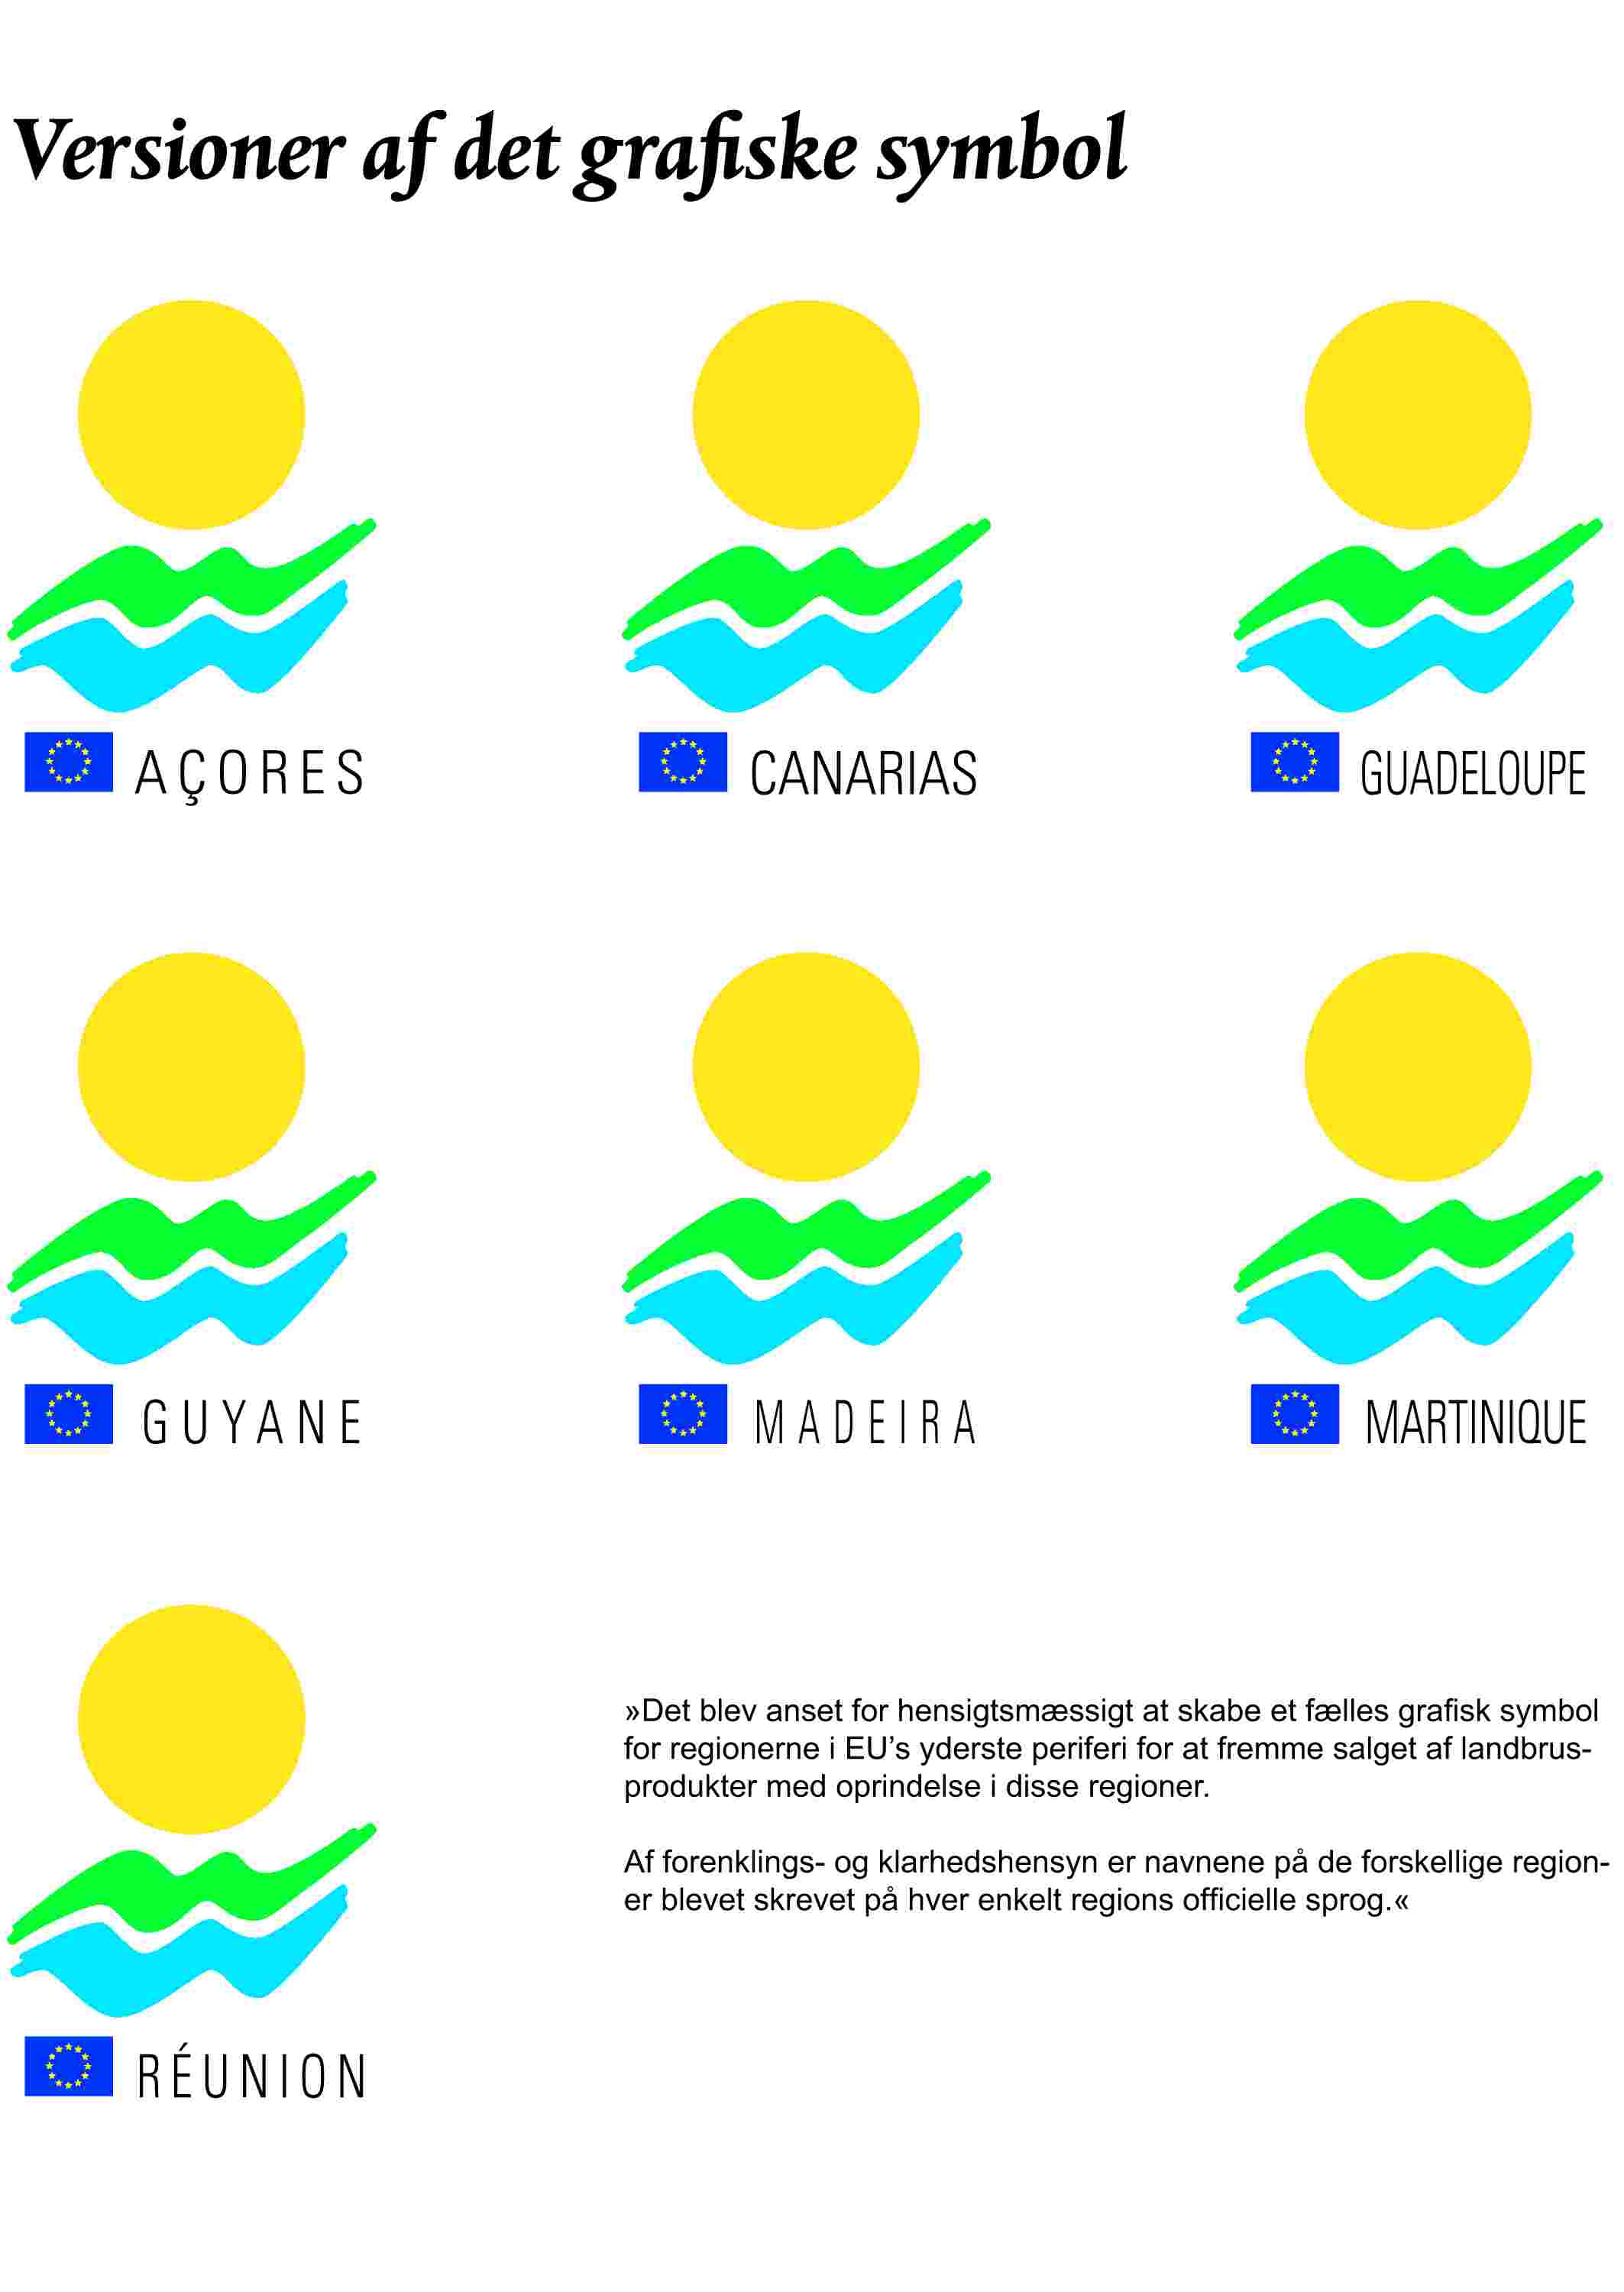 Versioner af det grafiske symbolAÇORESCANARIASGUADELOUPEGUYANEMADEIRAMARTINIQUERÉUNION»Det blev anset for hensigtsmæssigt at skabe et fælles grafisk symbol for regionerne i EU's yderste periferi for at fremme salget af landbrusprodukter med oprindelse i disse regioner.Af forenklings- og klarhedshensyn er navnene på de forskellige regioner blevet skrevet på hver enkelt regions officielle sprog.«